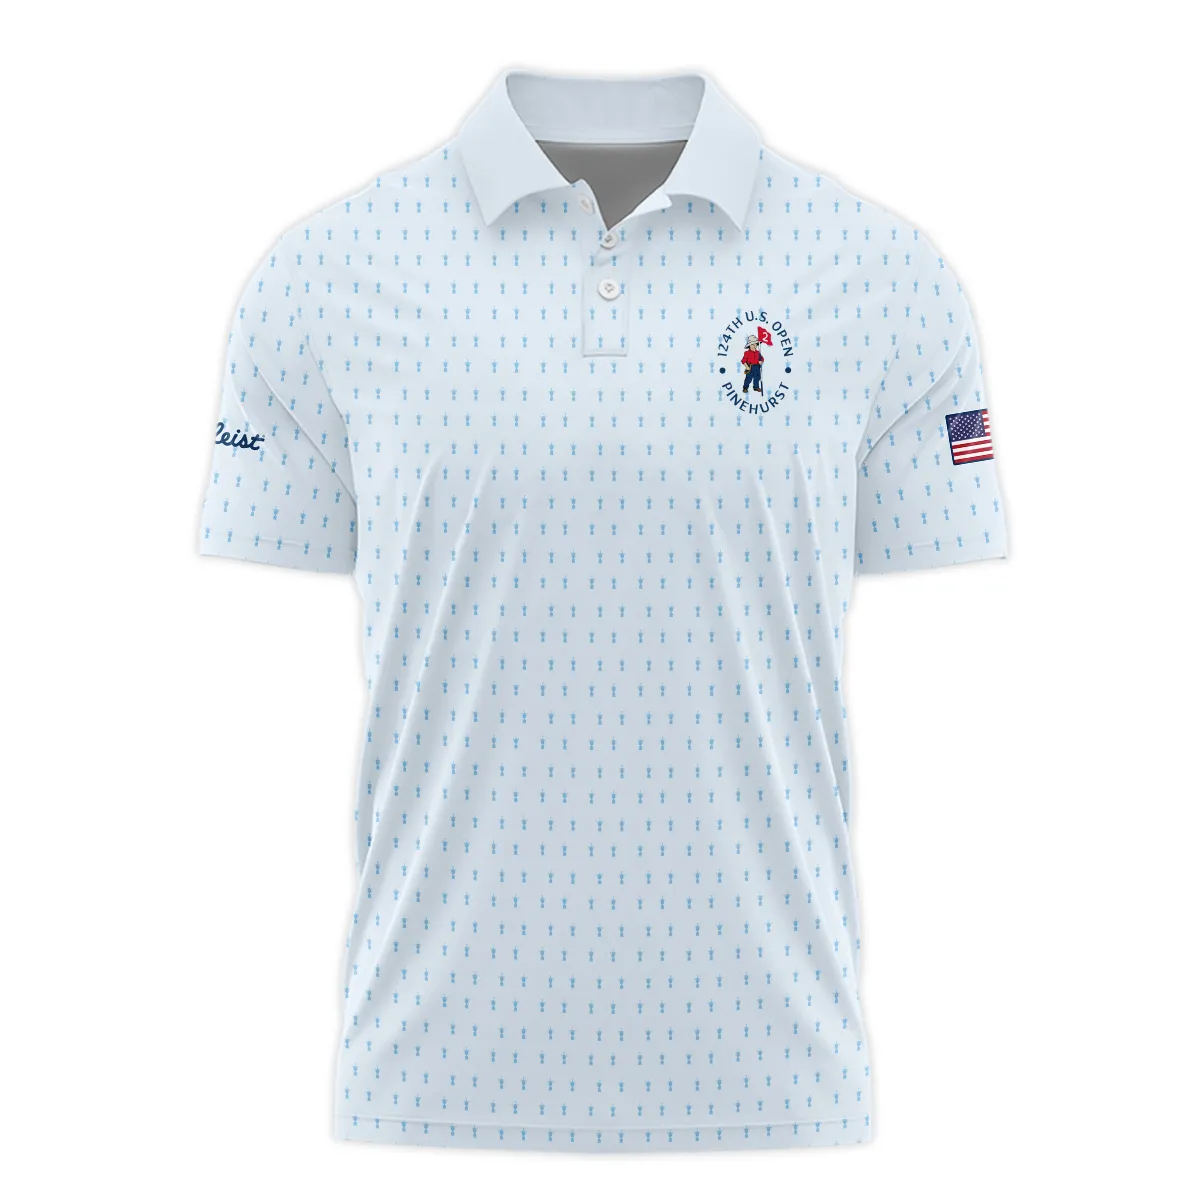 Golf Pattern Light Blue Cup 124th U.S. Open Pinehurst Titleist Zipper Hoodie Shirt Style Classic